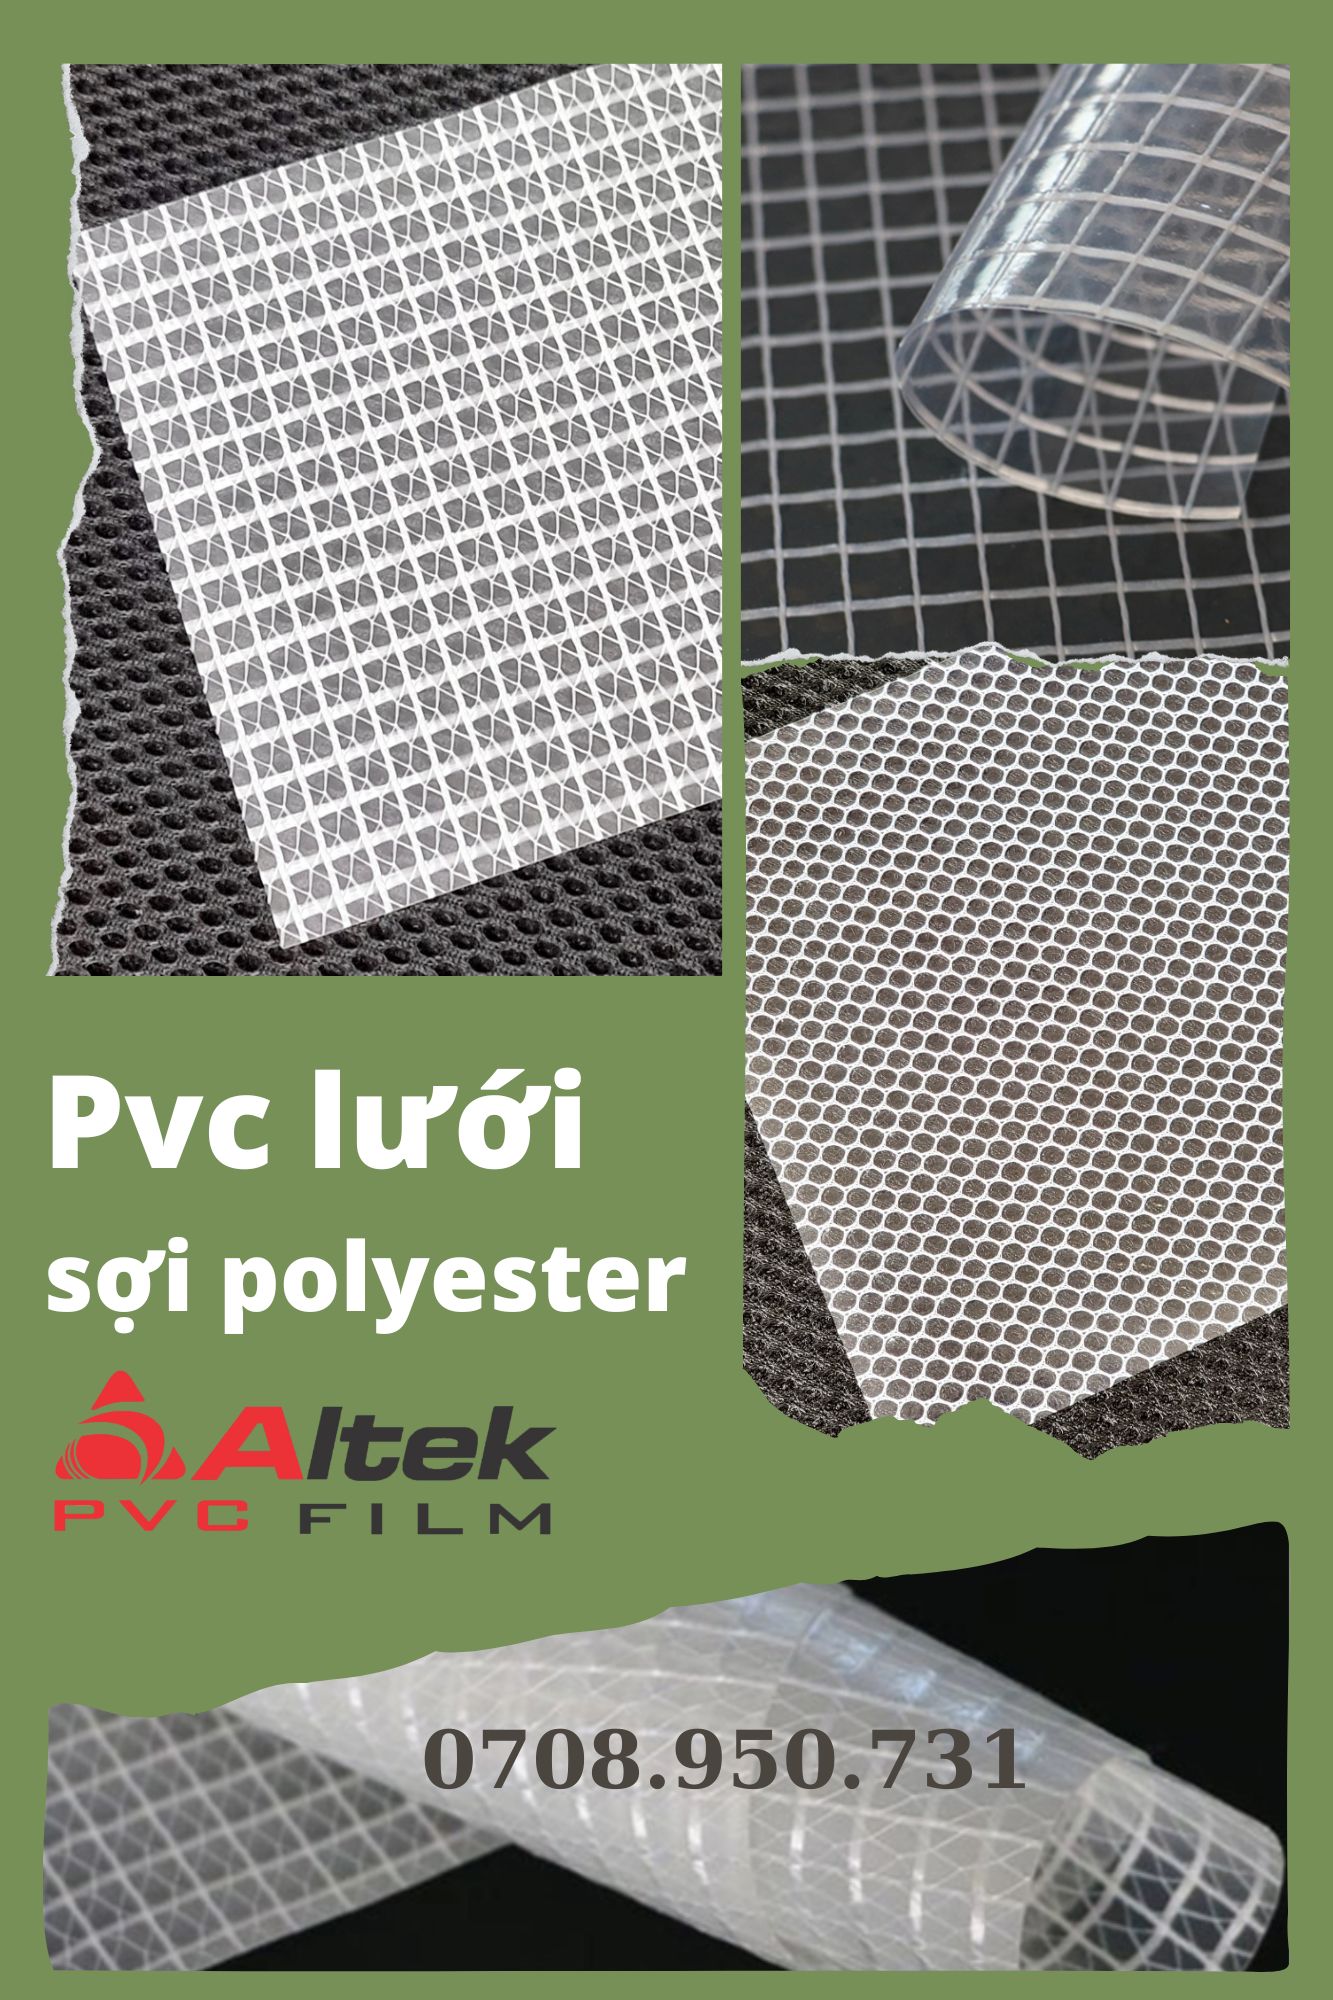 màng nhựa lưới sợi polyester bình dương giúp che mưa chống bụi